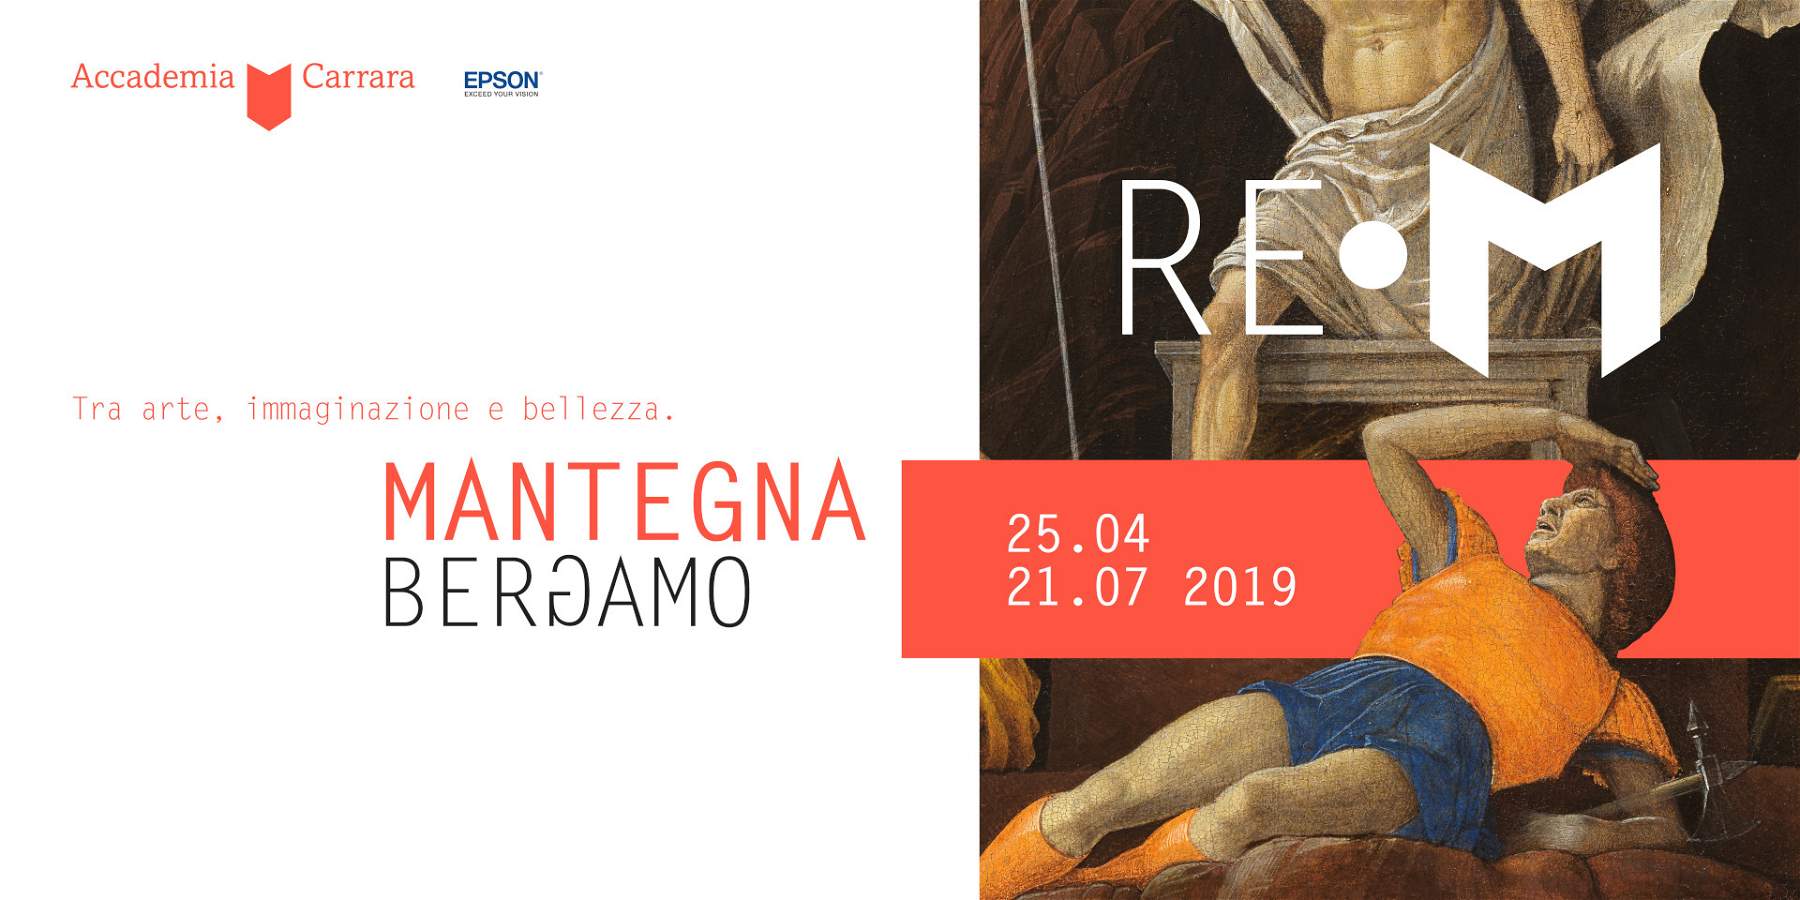 In Bergamo, Mantegna's Resurrection stars in immersive exhibition at the Accademia Carrara